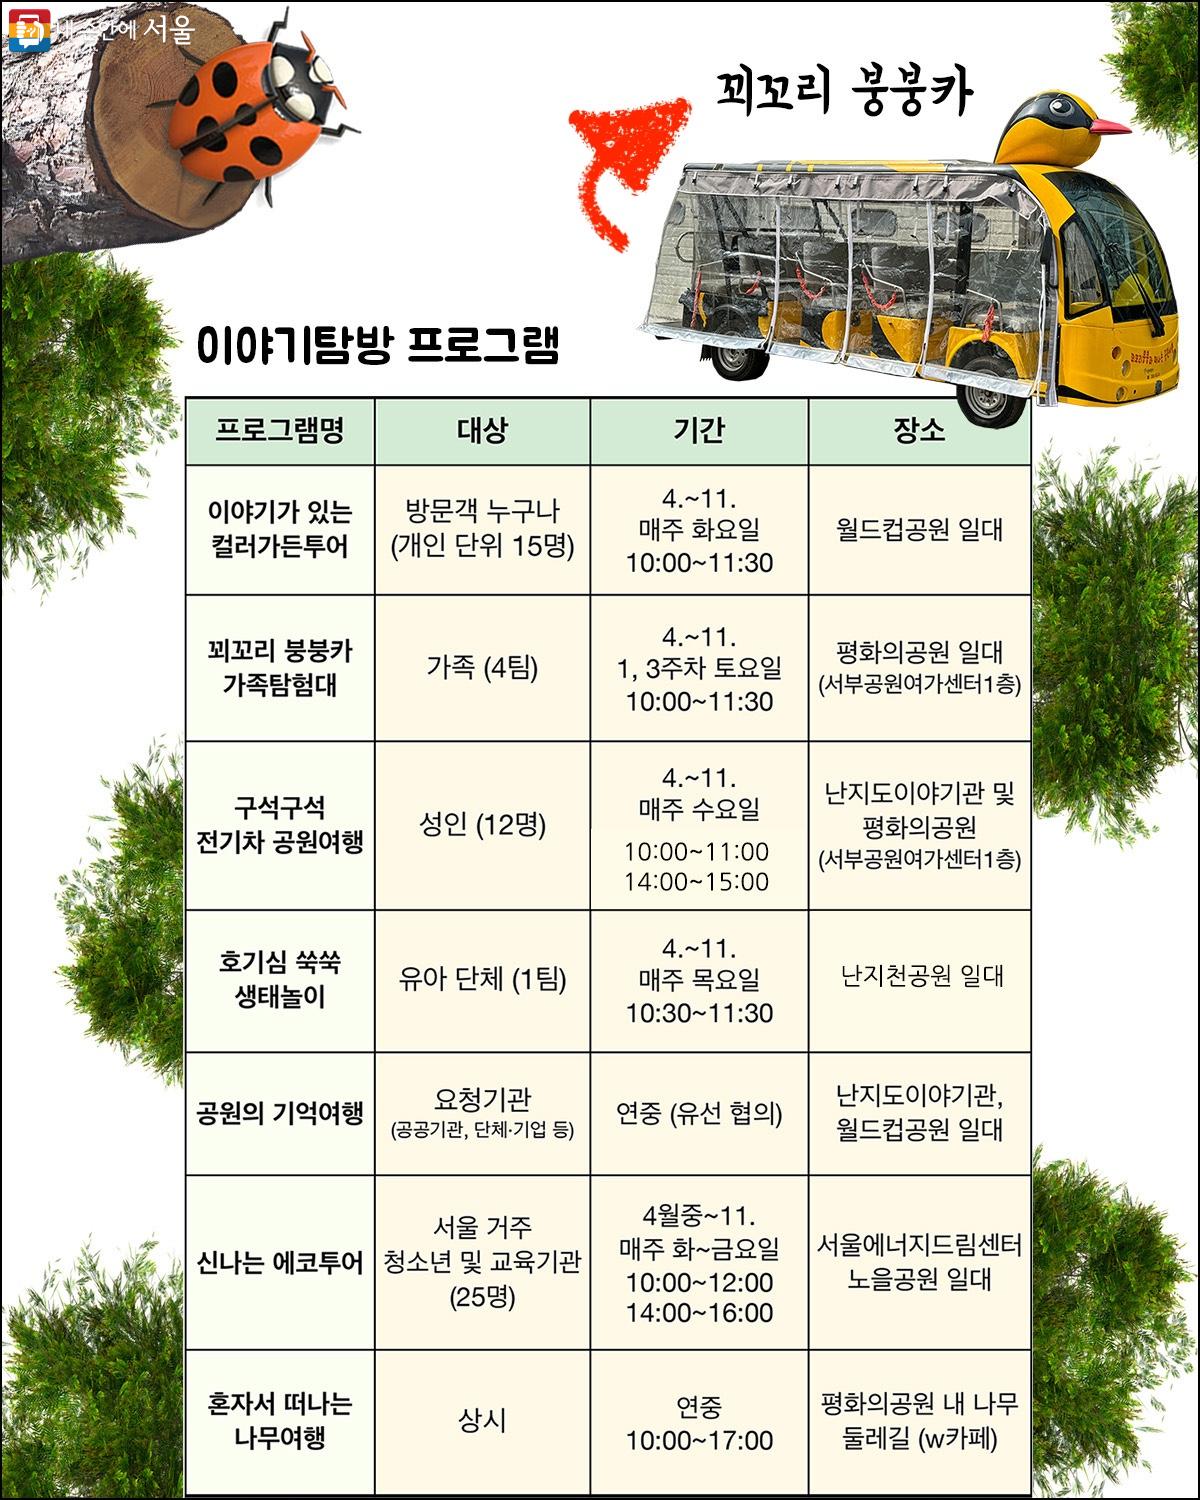 월드컵공원 이야기탐방 세부 프로그램. 운영 상황에 따라 일부 변경될 수 있어 자세한 일정은 ‘서울의공원 누리집’을 통해 확인해야 한다. ©이수정